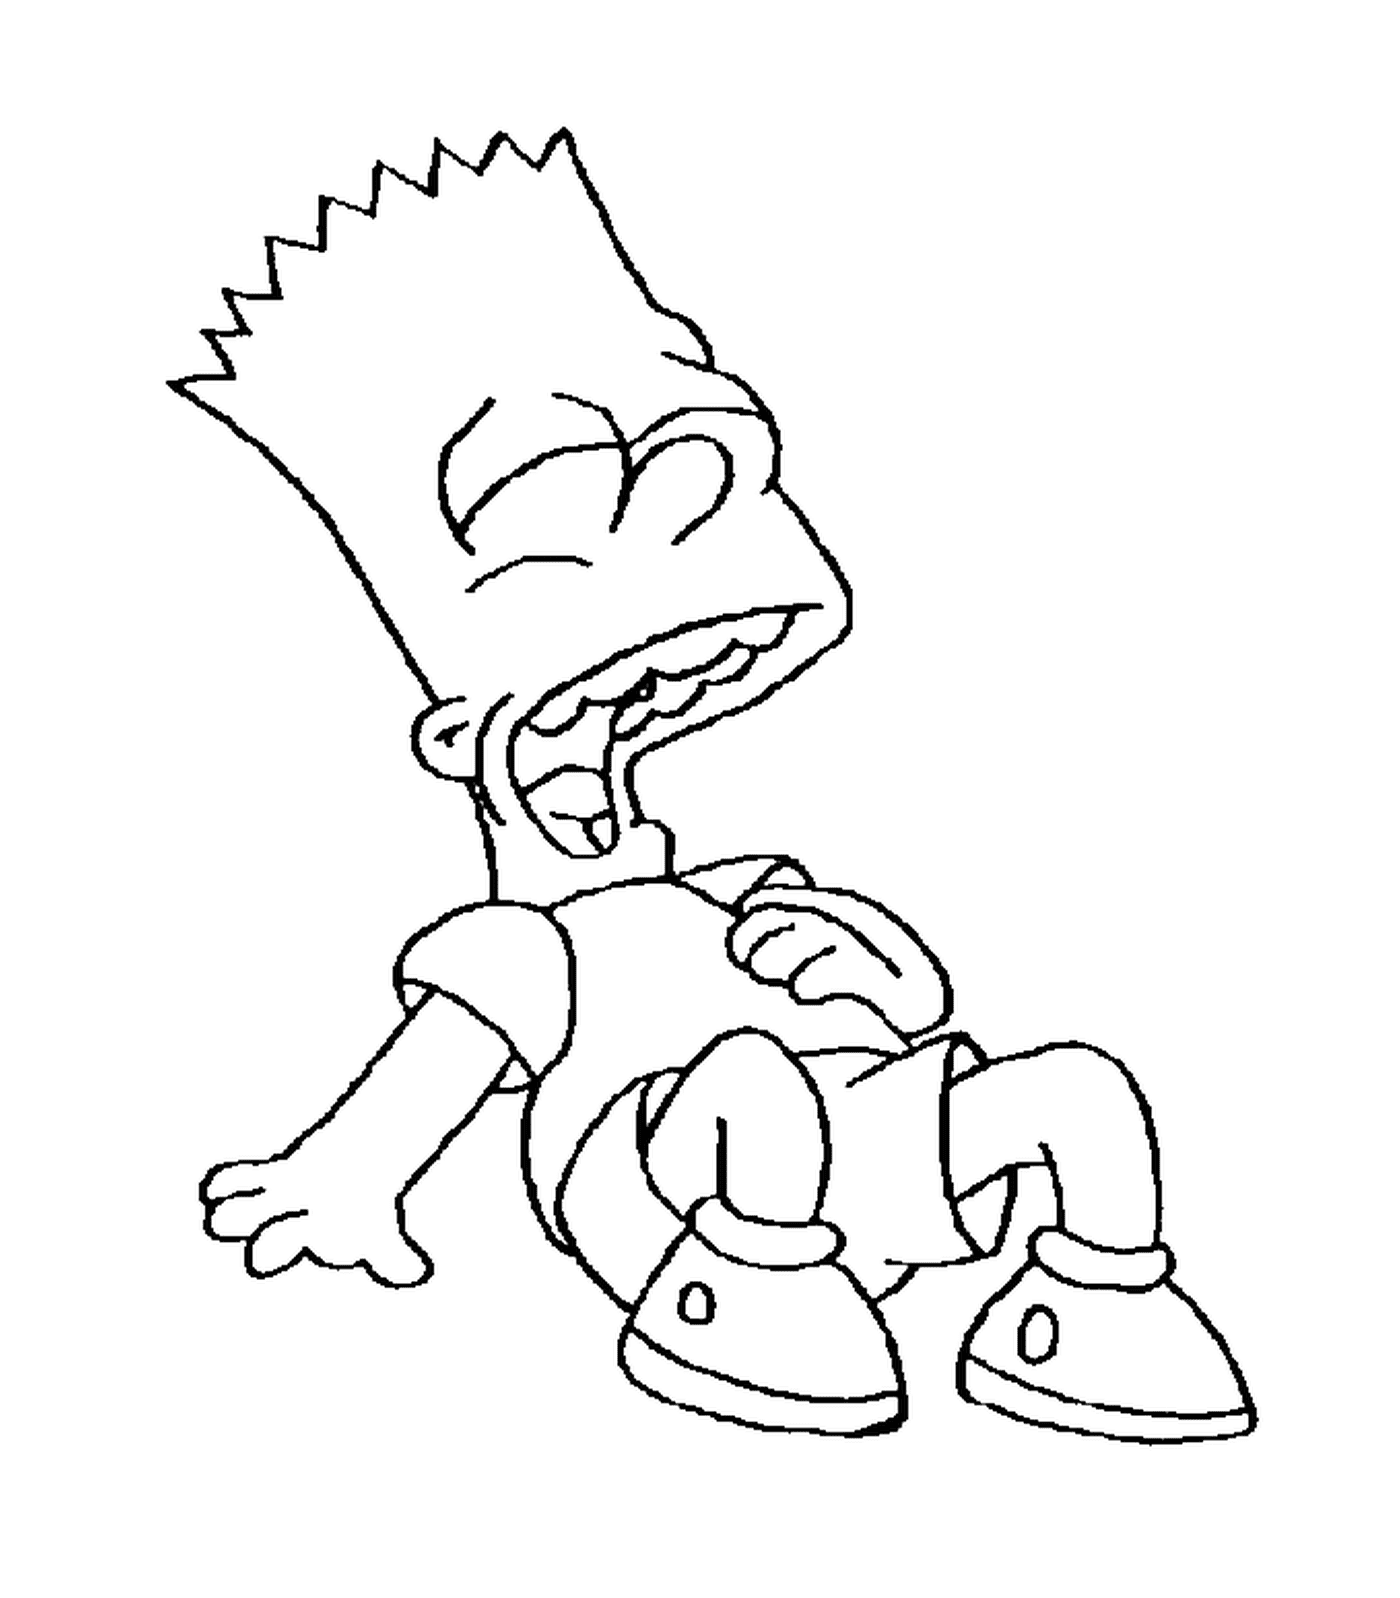  Барт смеется, карикатурный персонаж сидит на полу 